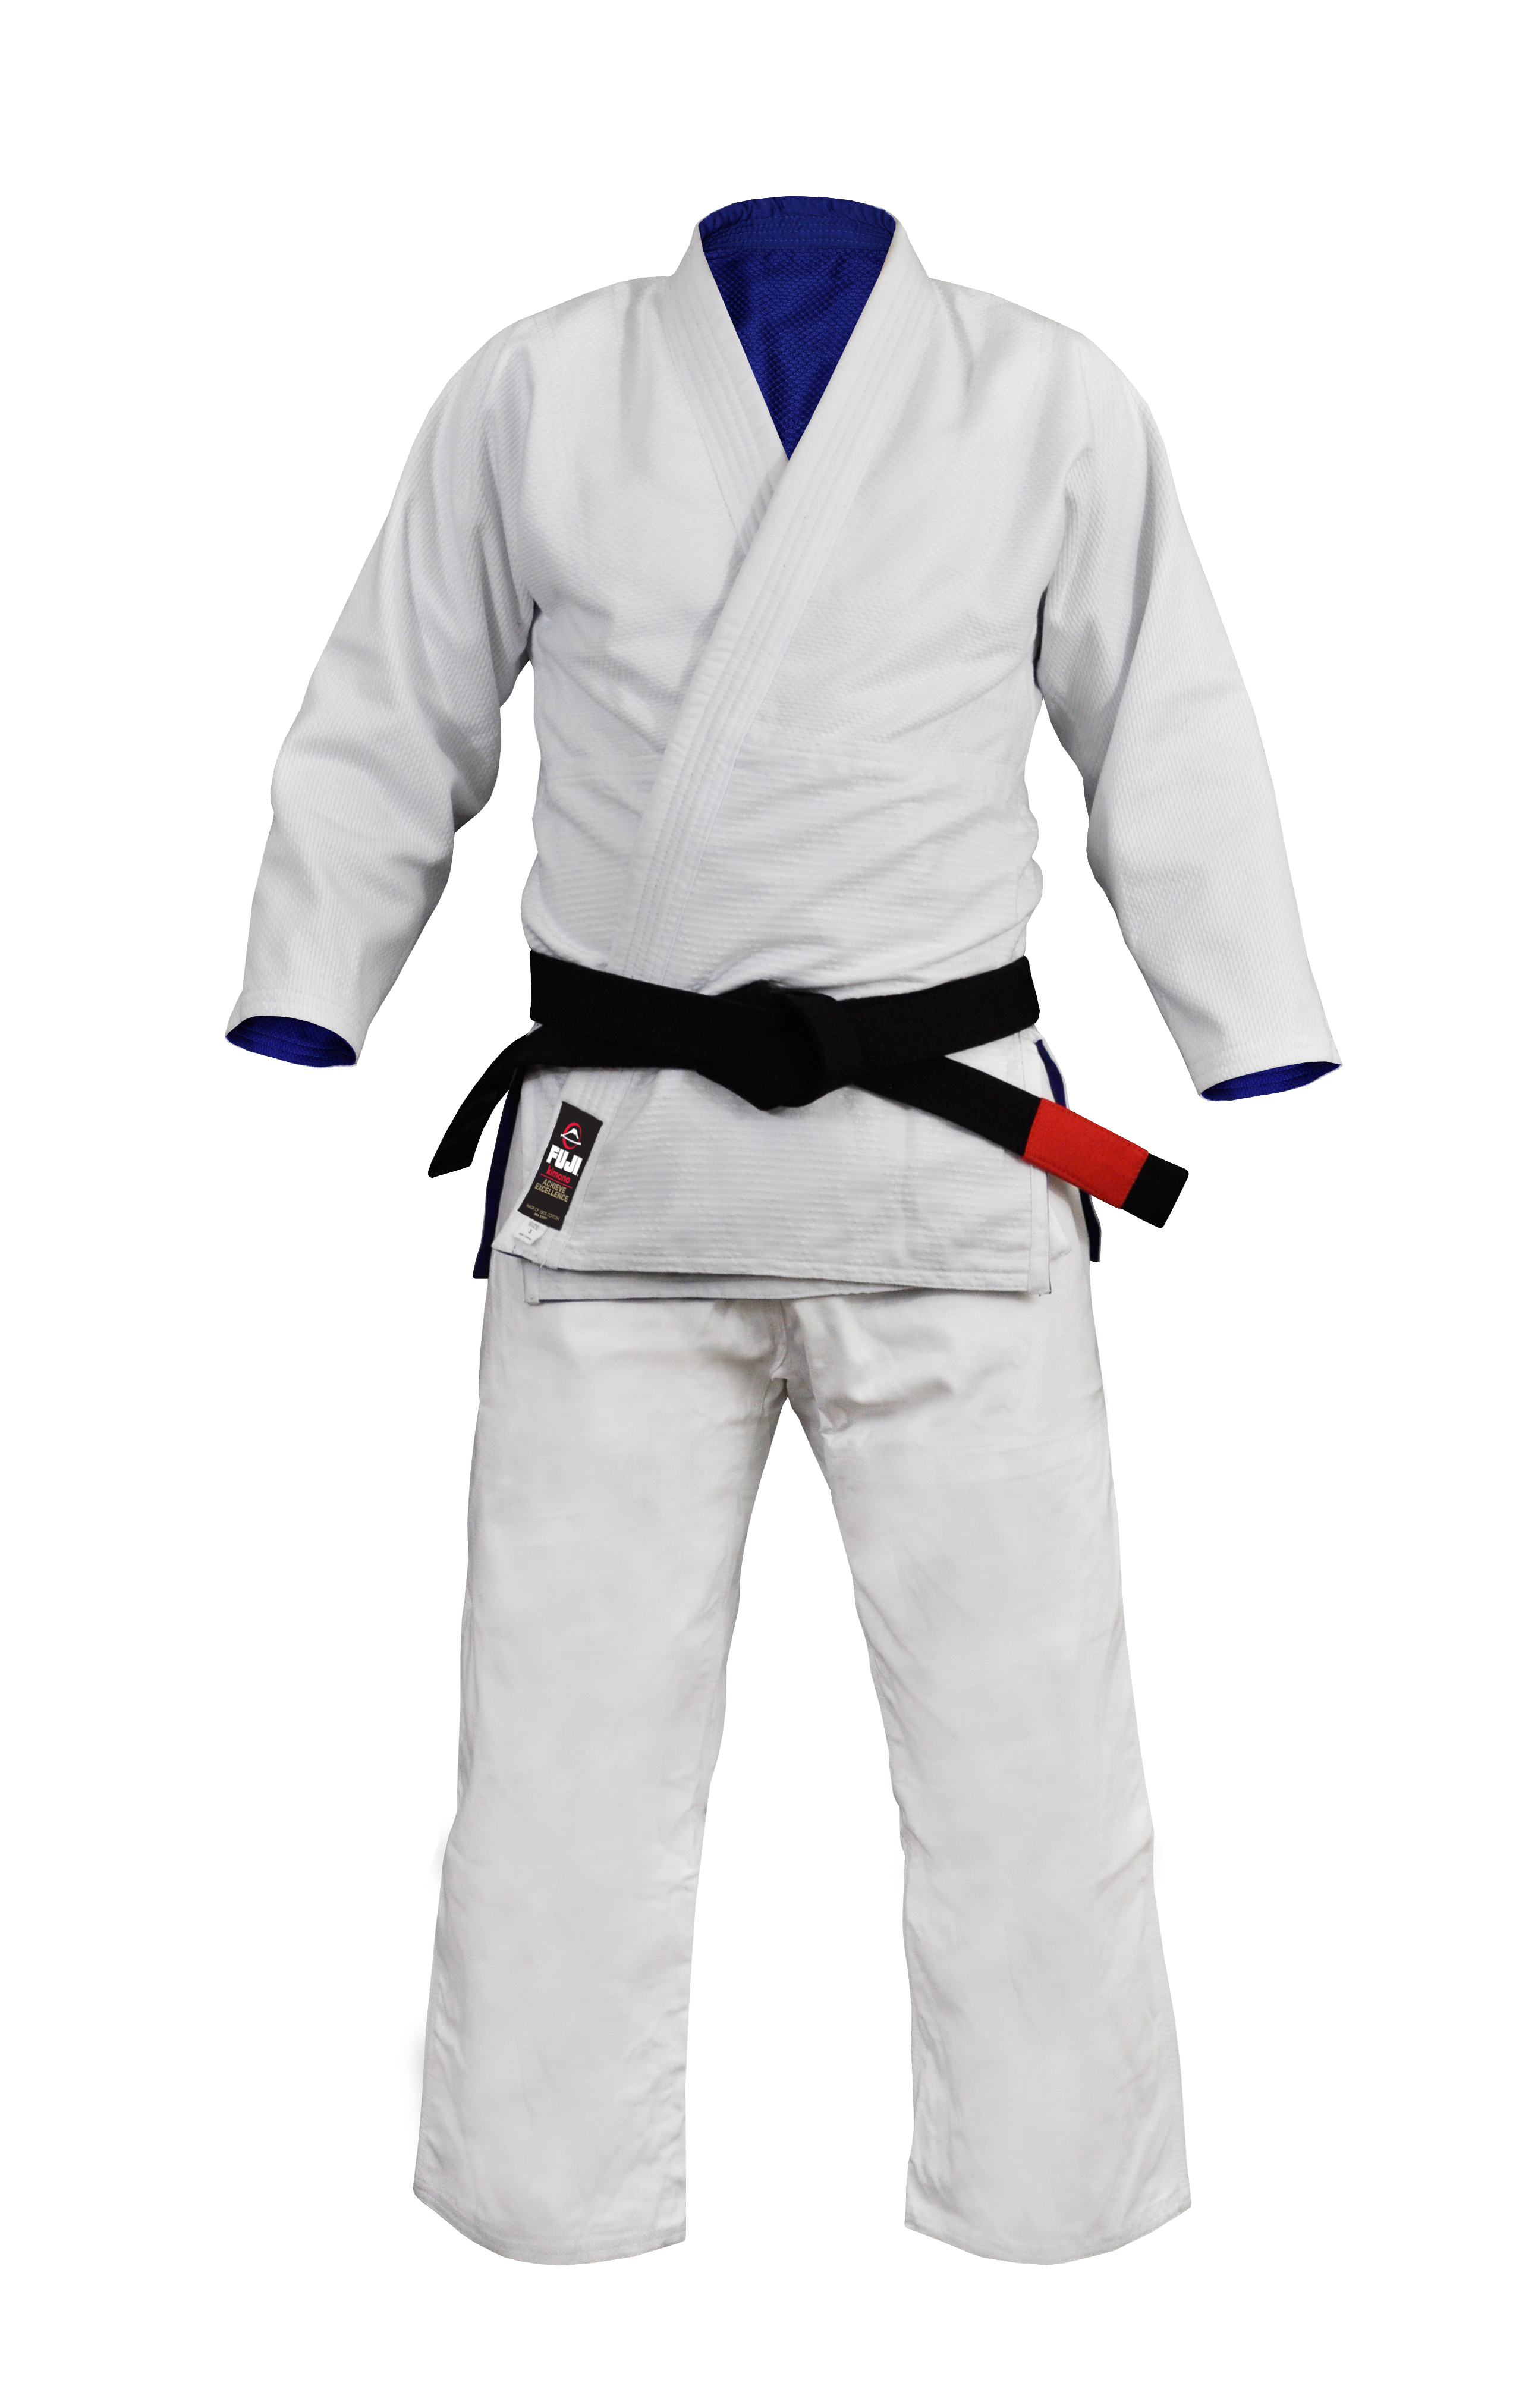 Judogi Uniform PNG Picture